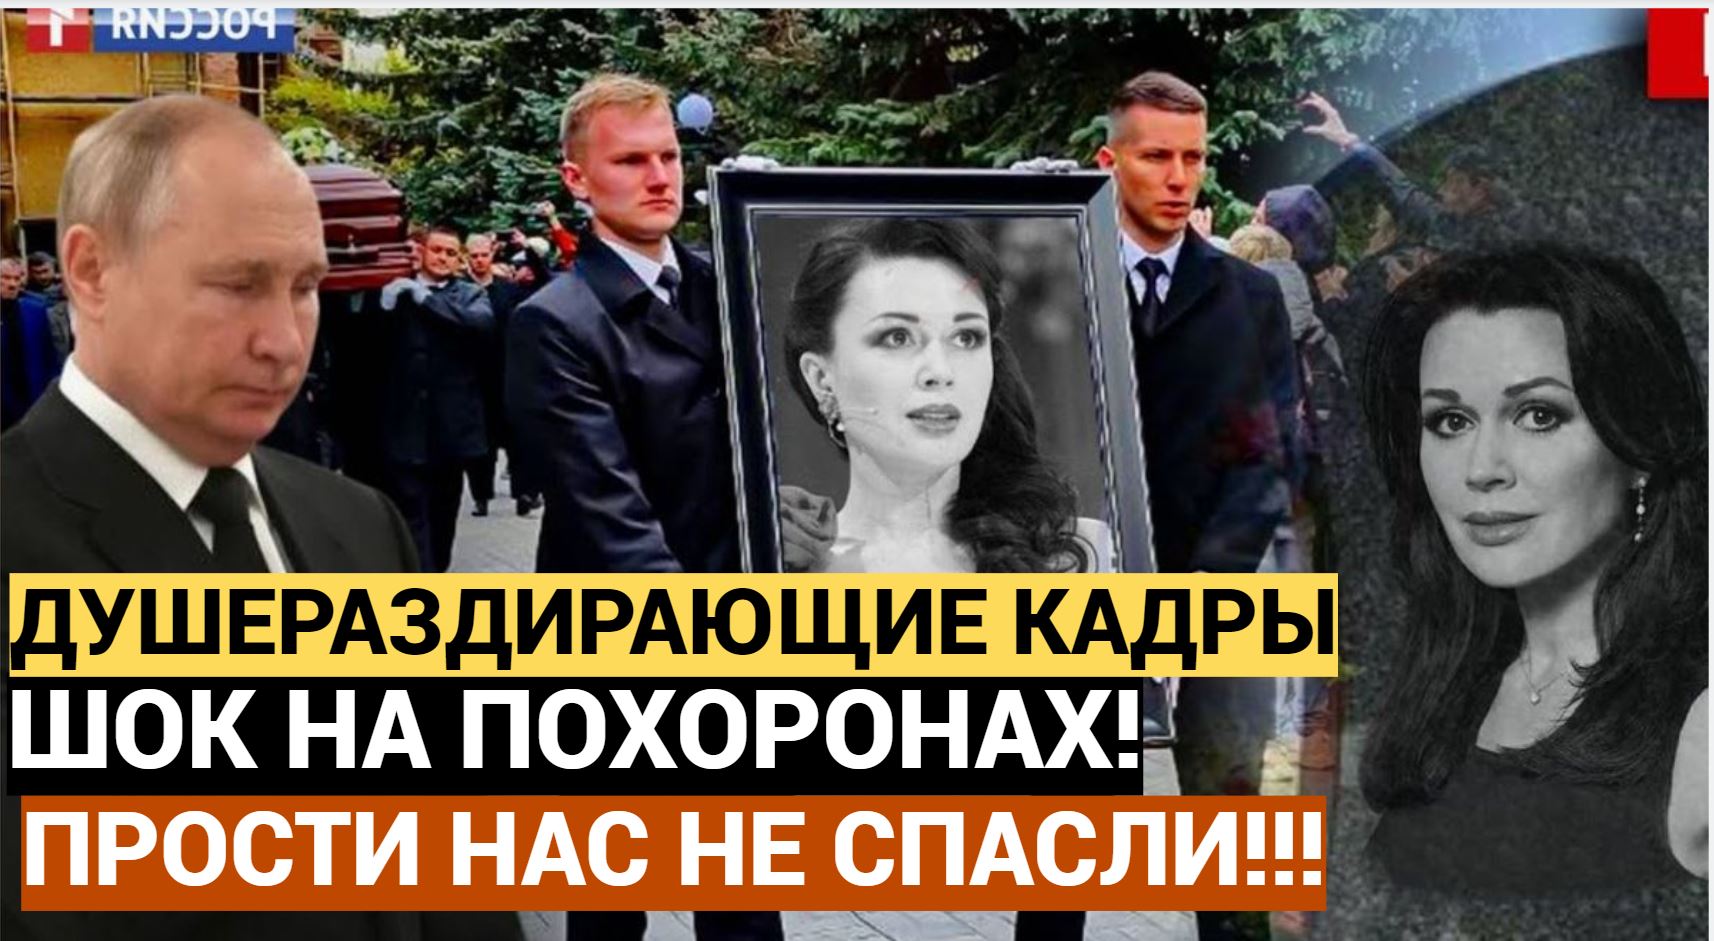 «Прости нас, что мы тебя не спасли!» душераздирающие кадры похорон Анастасии Заворотнюк